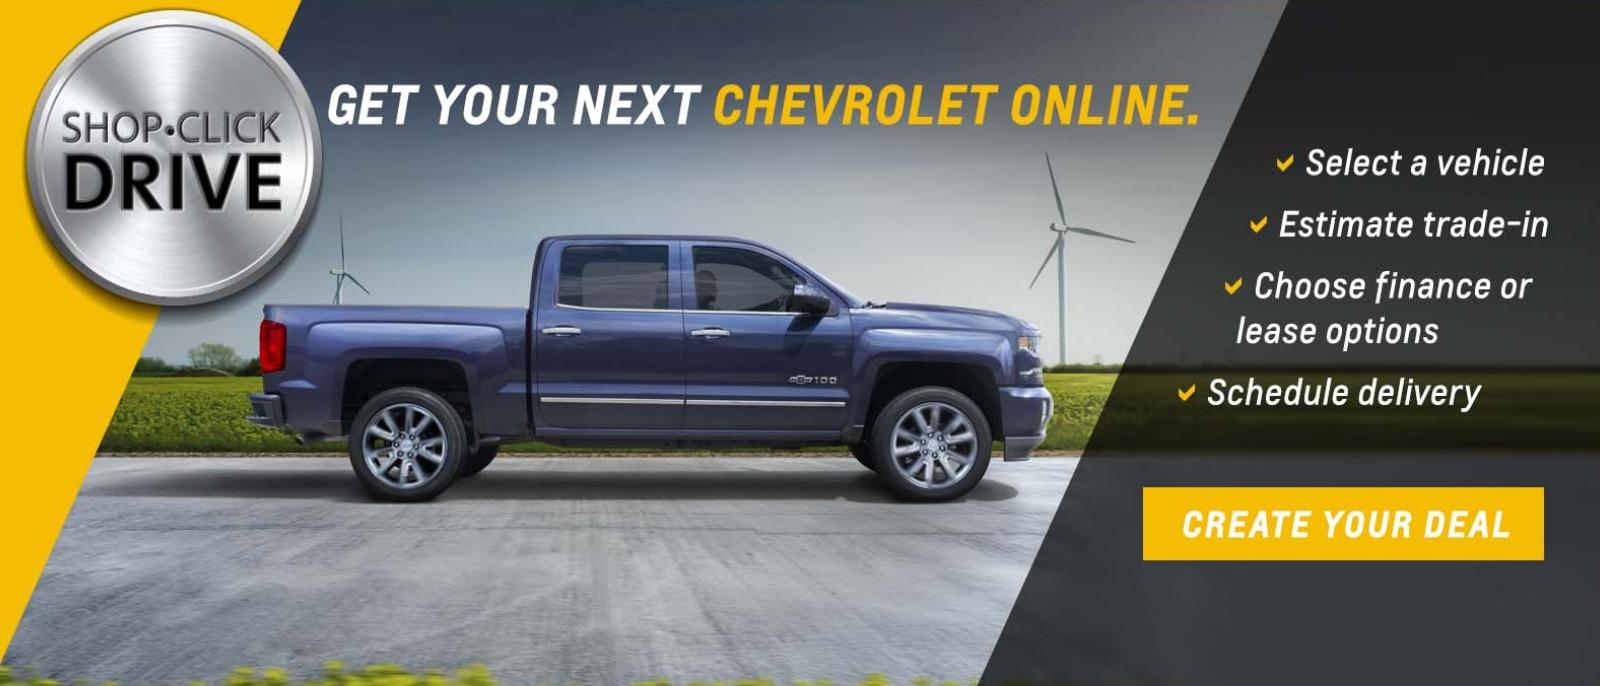 Get your Chevrolet online - SCD